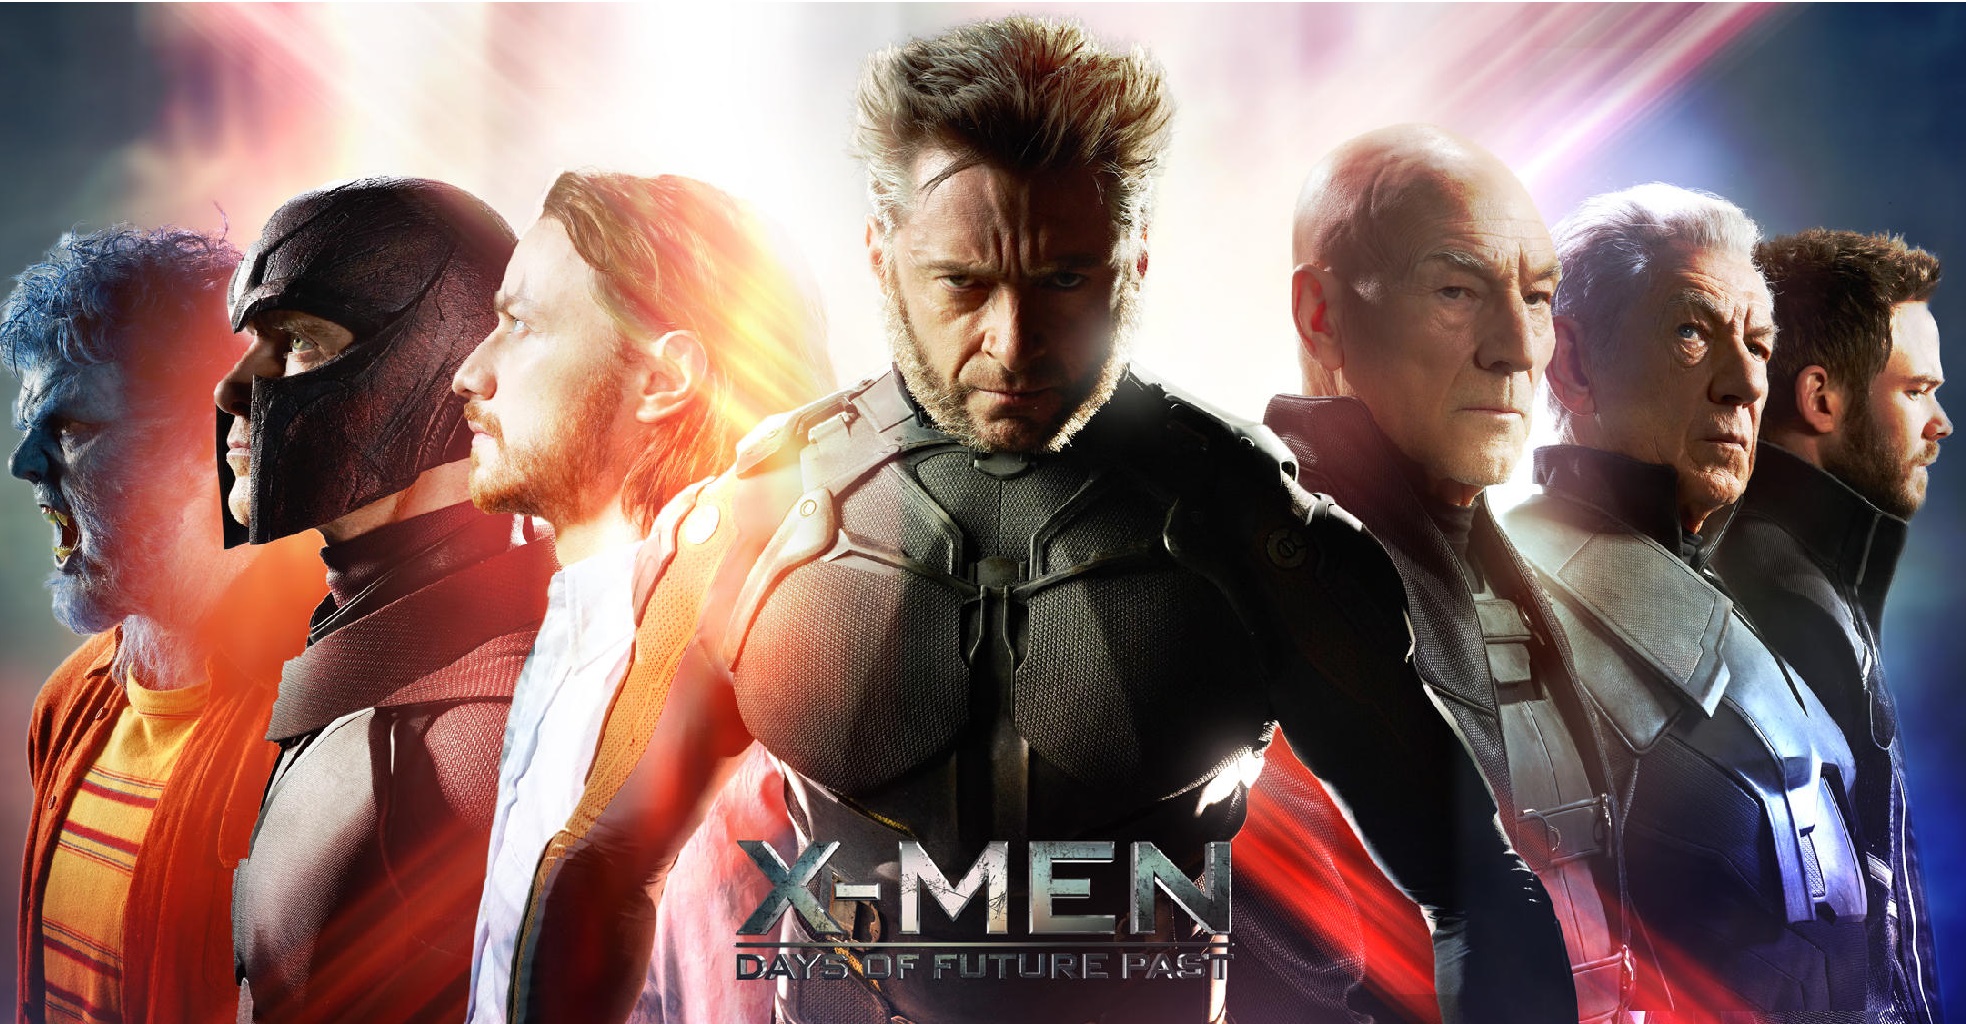 X Men成軍以來最強大的反擊戰 上 映畫手民